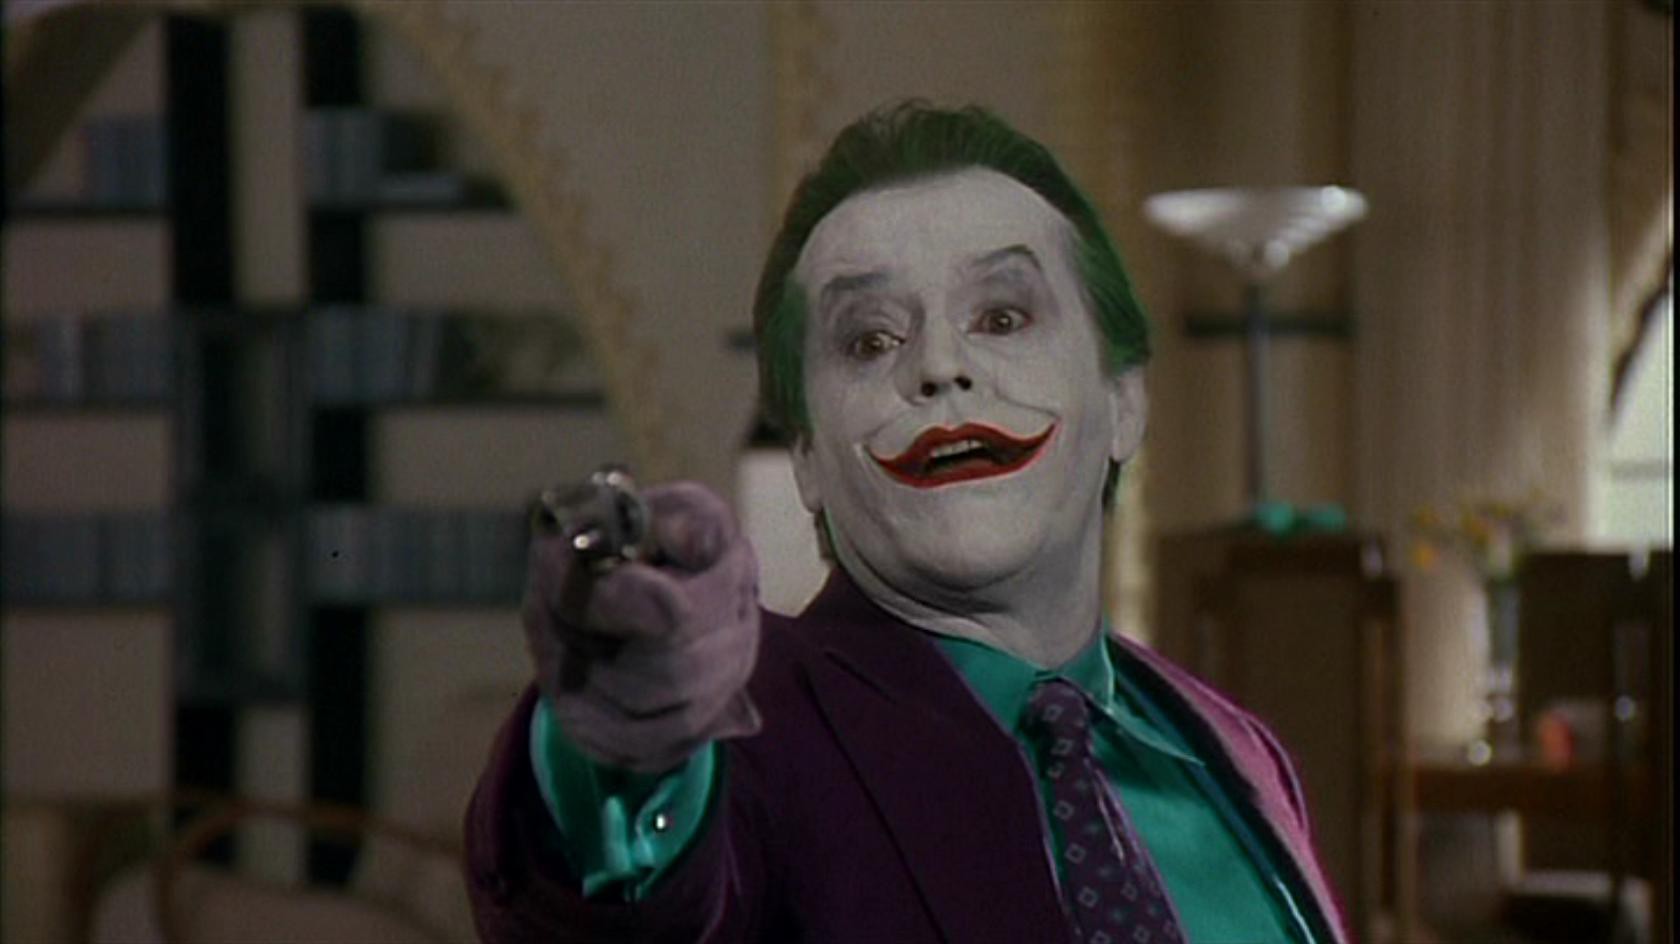 Điểm lại những câu thoại đắt giá làm nên tên tuổi gã hề Joker - Ảnh 3.